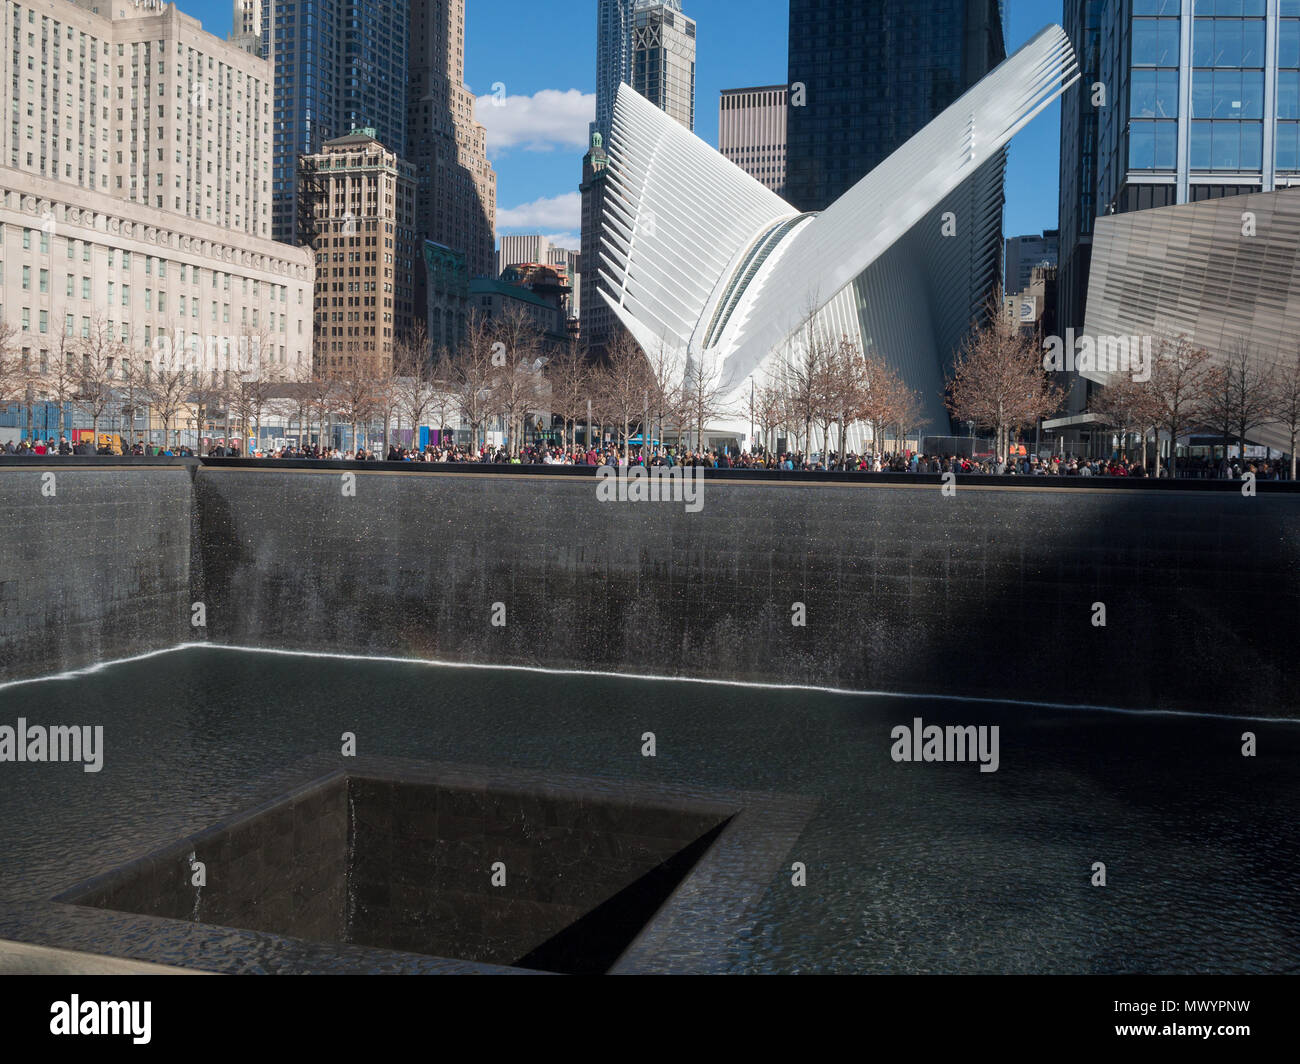 El monumento conmemorativo de 911 y el Oculus Foto de stock